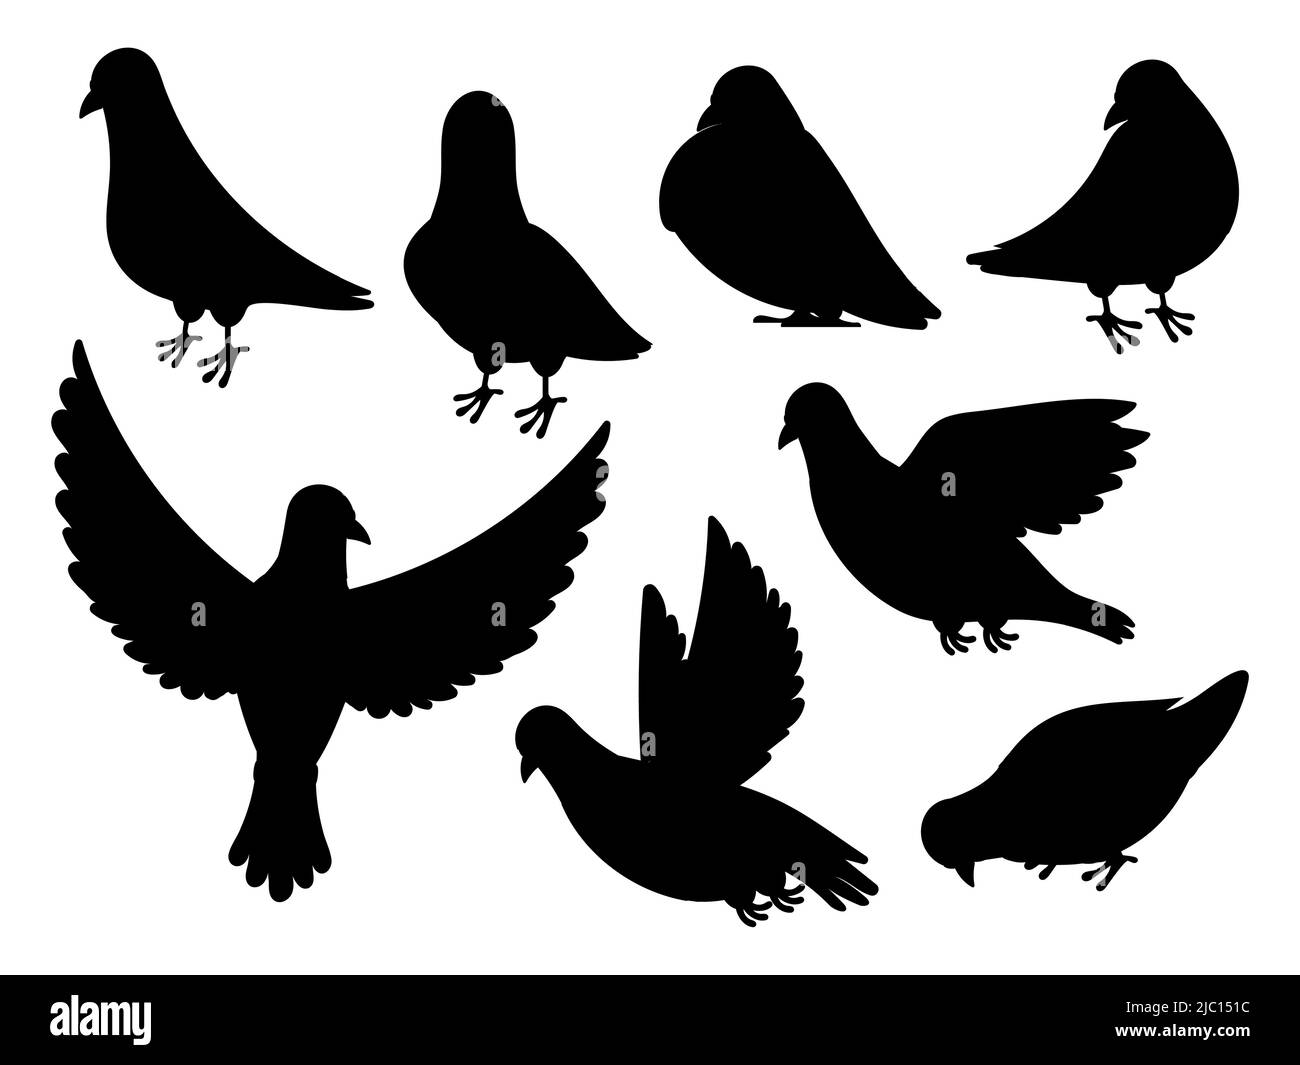 Silhouette de Pigeon. Oiseau noir volant debout, silhouette de colombe isolée sur blanc. Collection de formes animales vectorielles Illustration de Vecteur